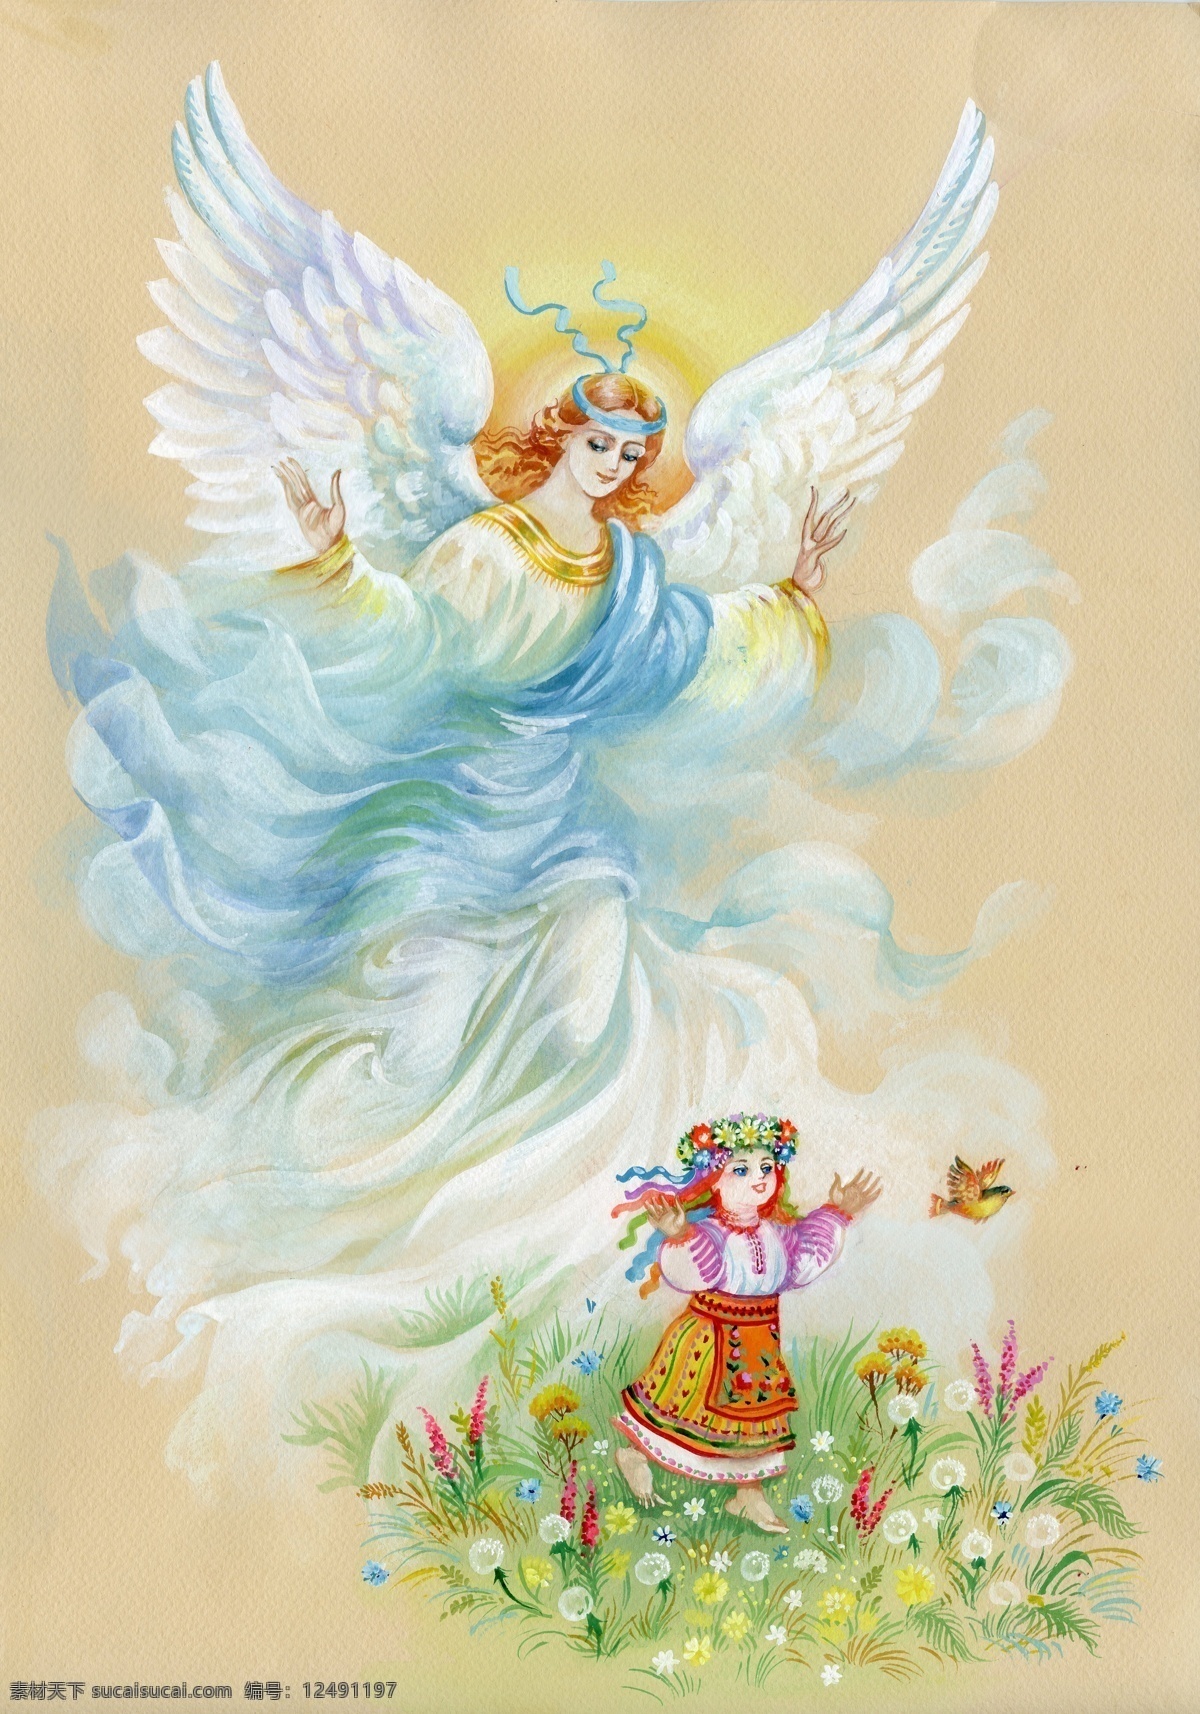 小女孩 天使 插画 鲜花 天使翅膀 天使美女 爱神油画 水彩画 卡通人物 人物图片